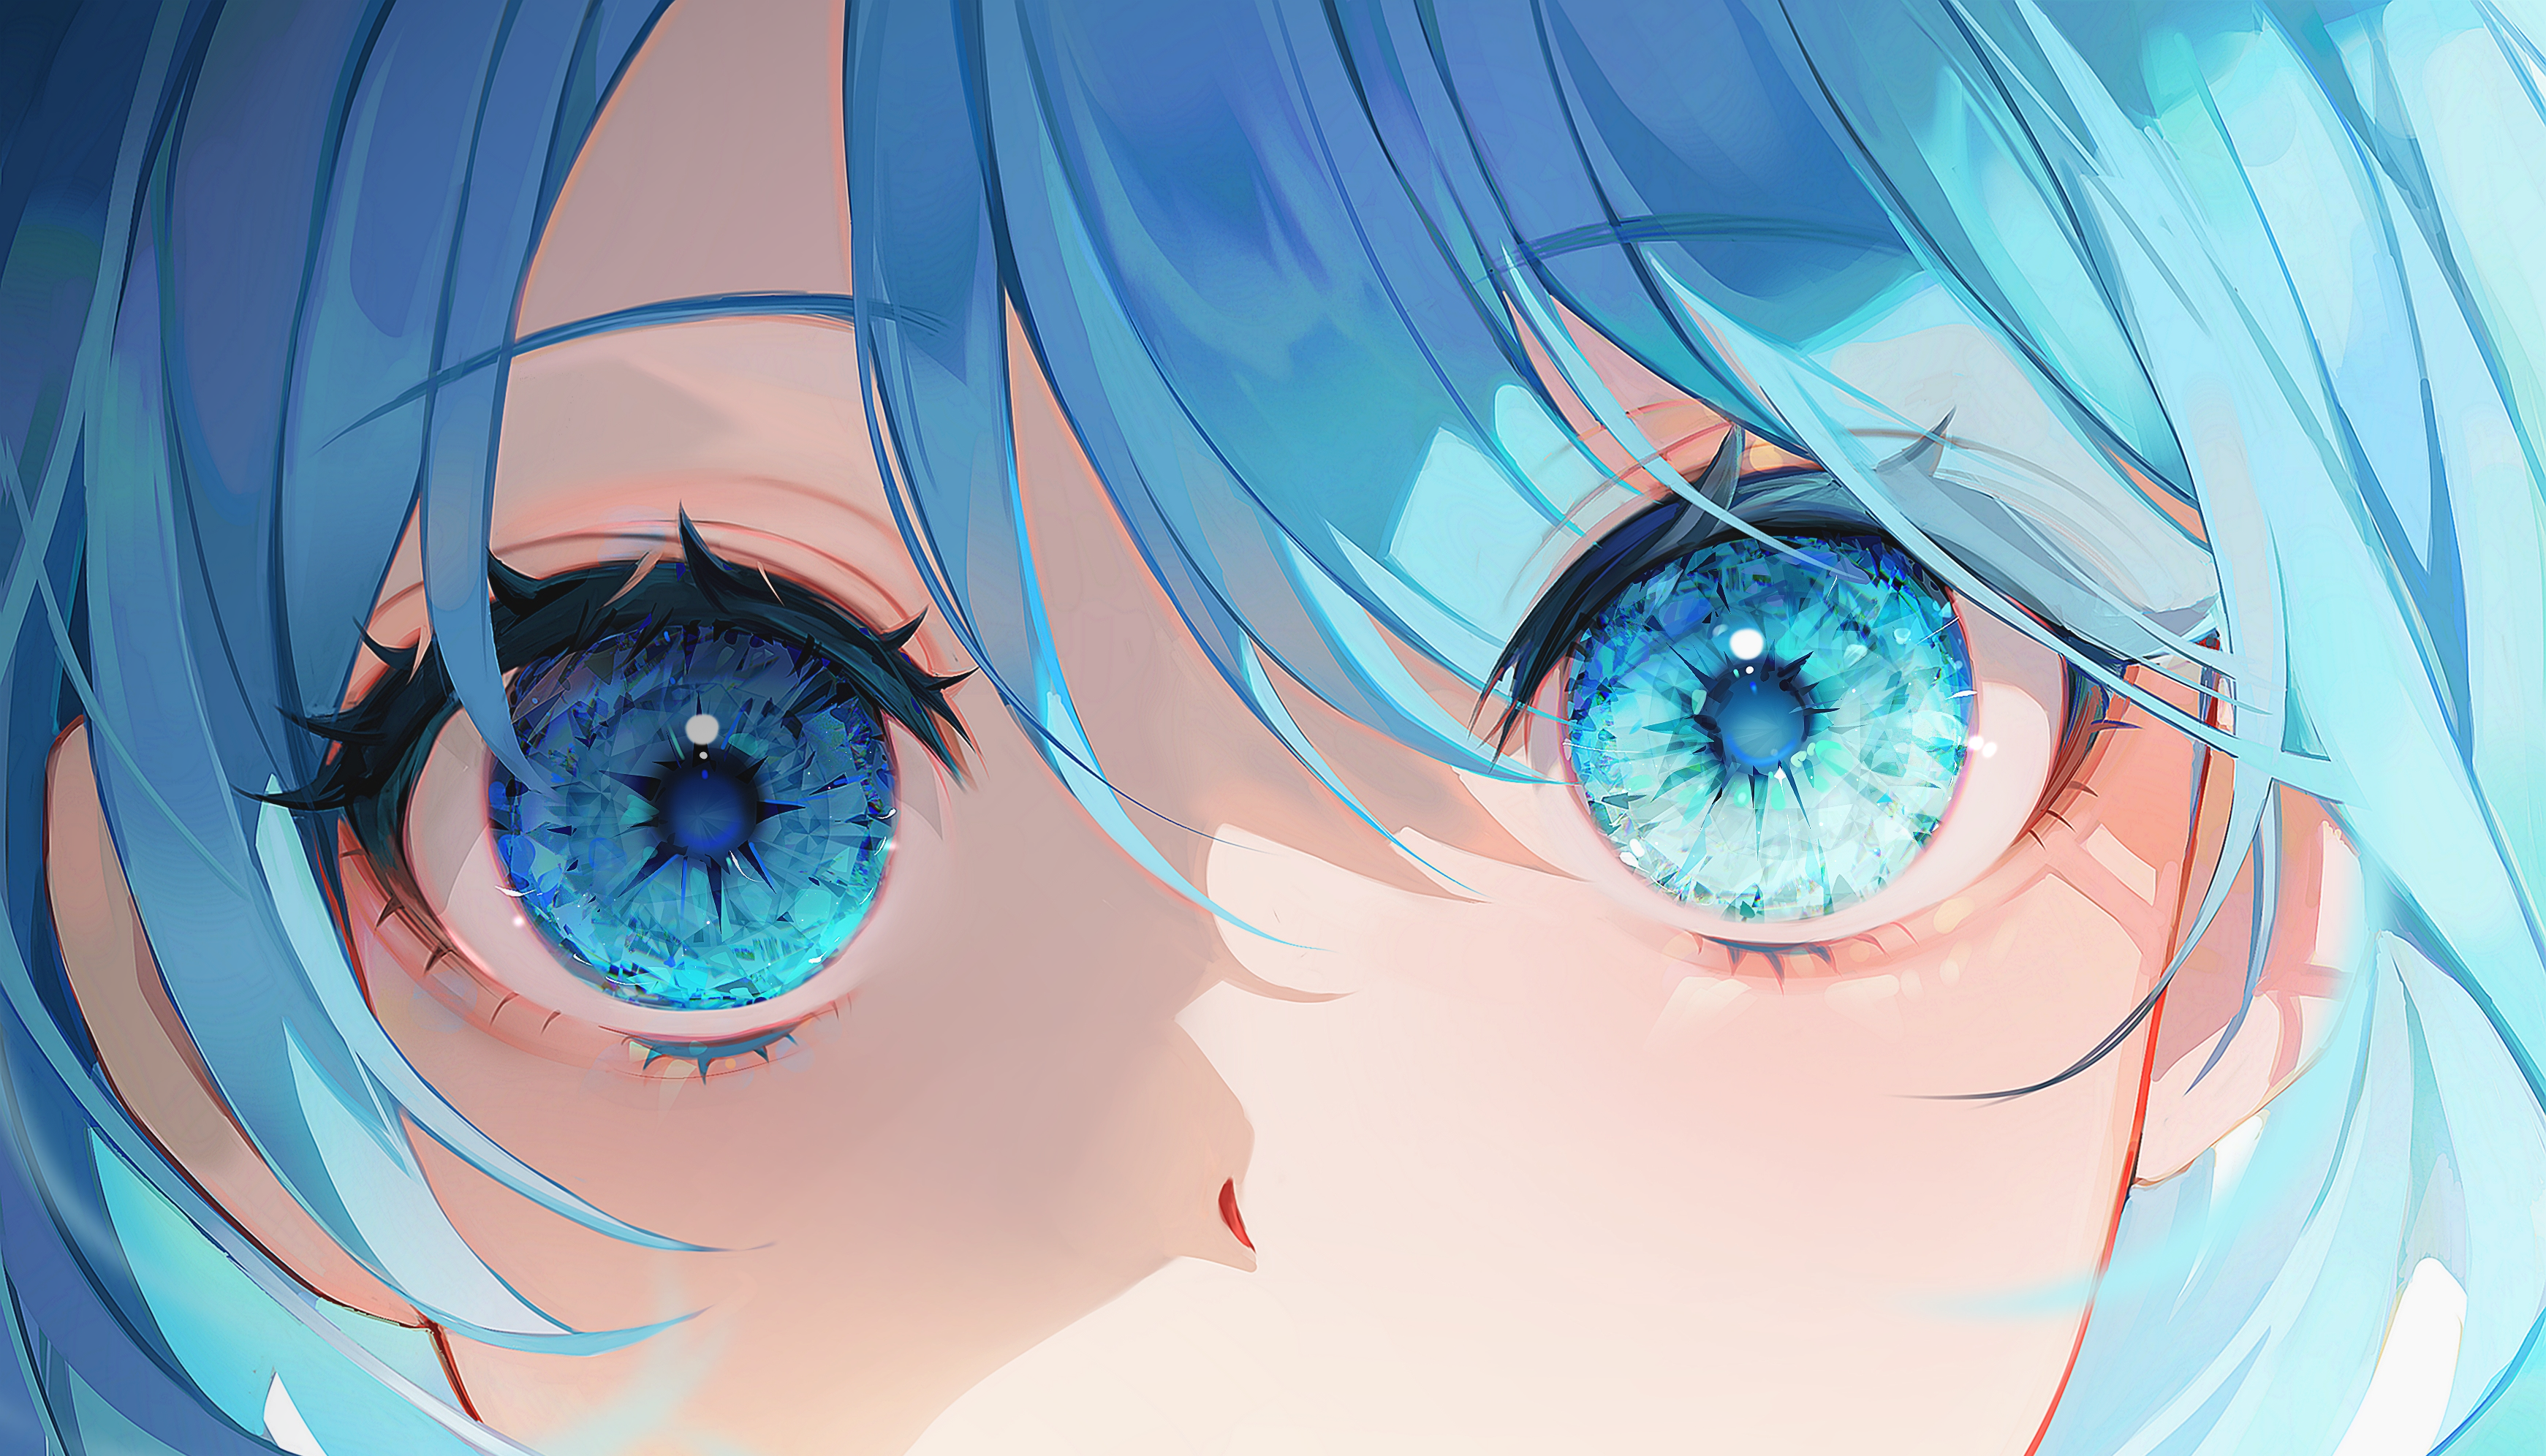 Happy anime face. Manga style big blue eyes, - Stock Illustration  [65574635] - PIXTA